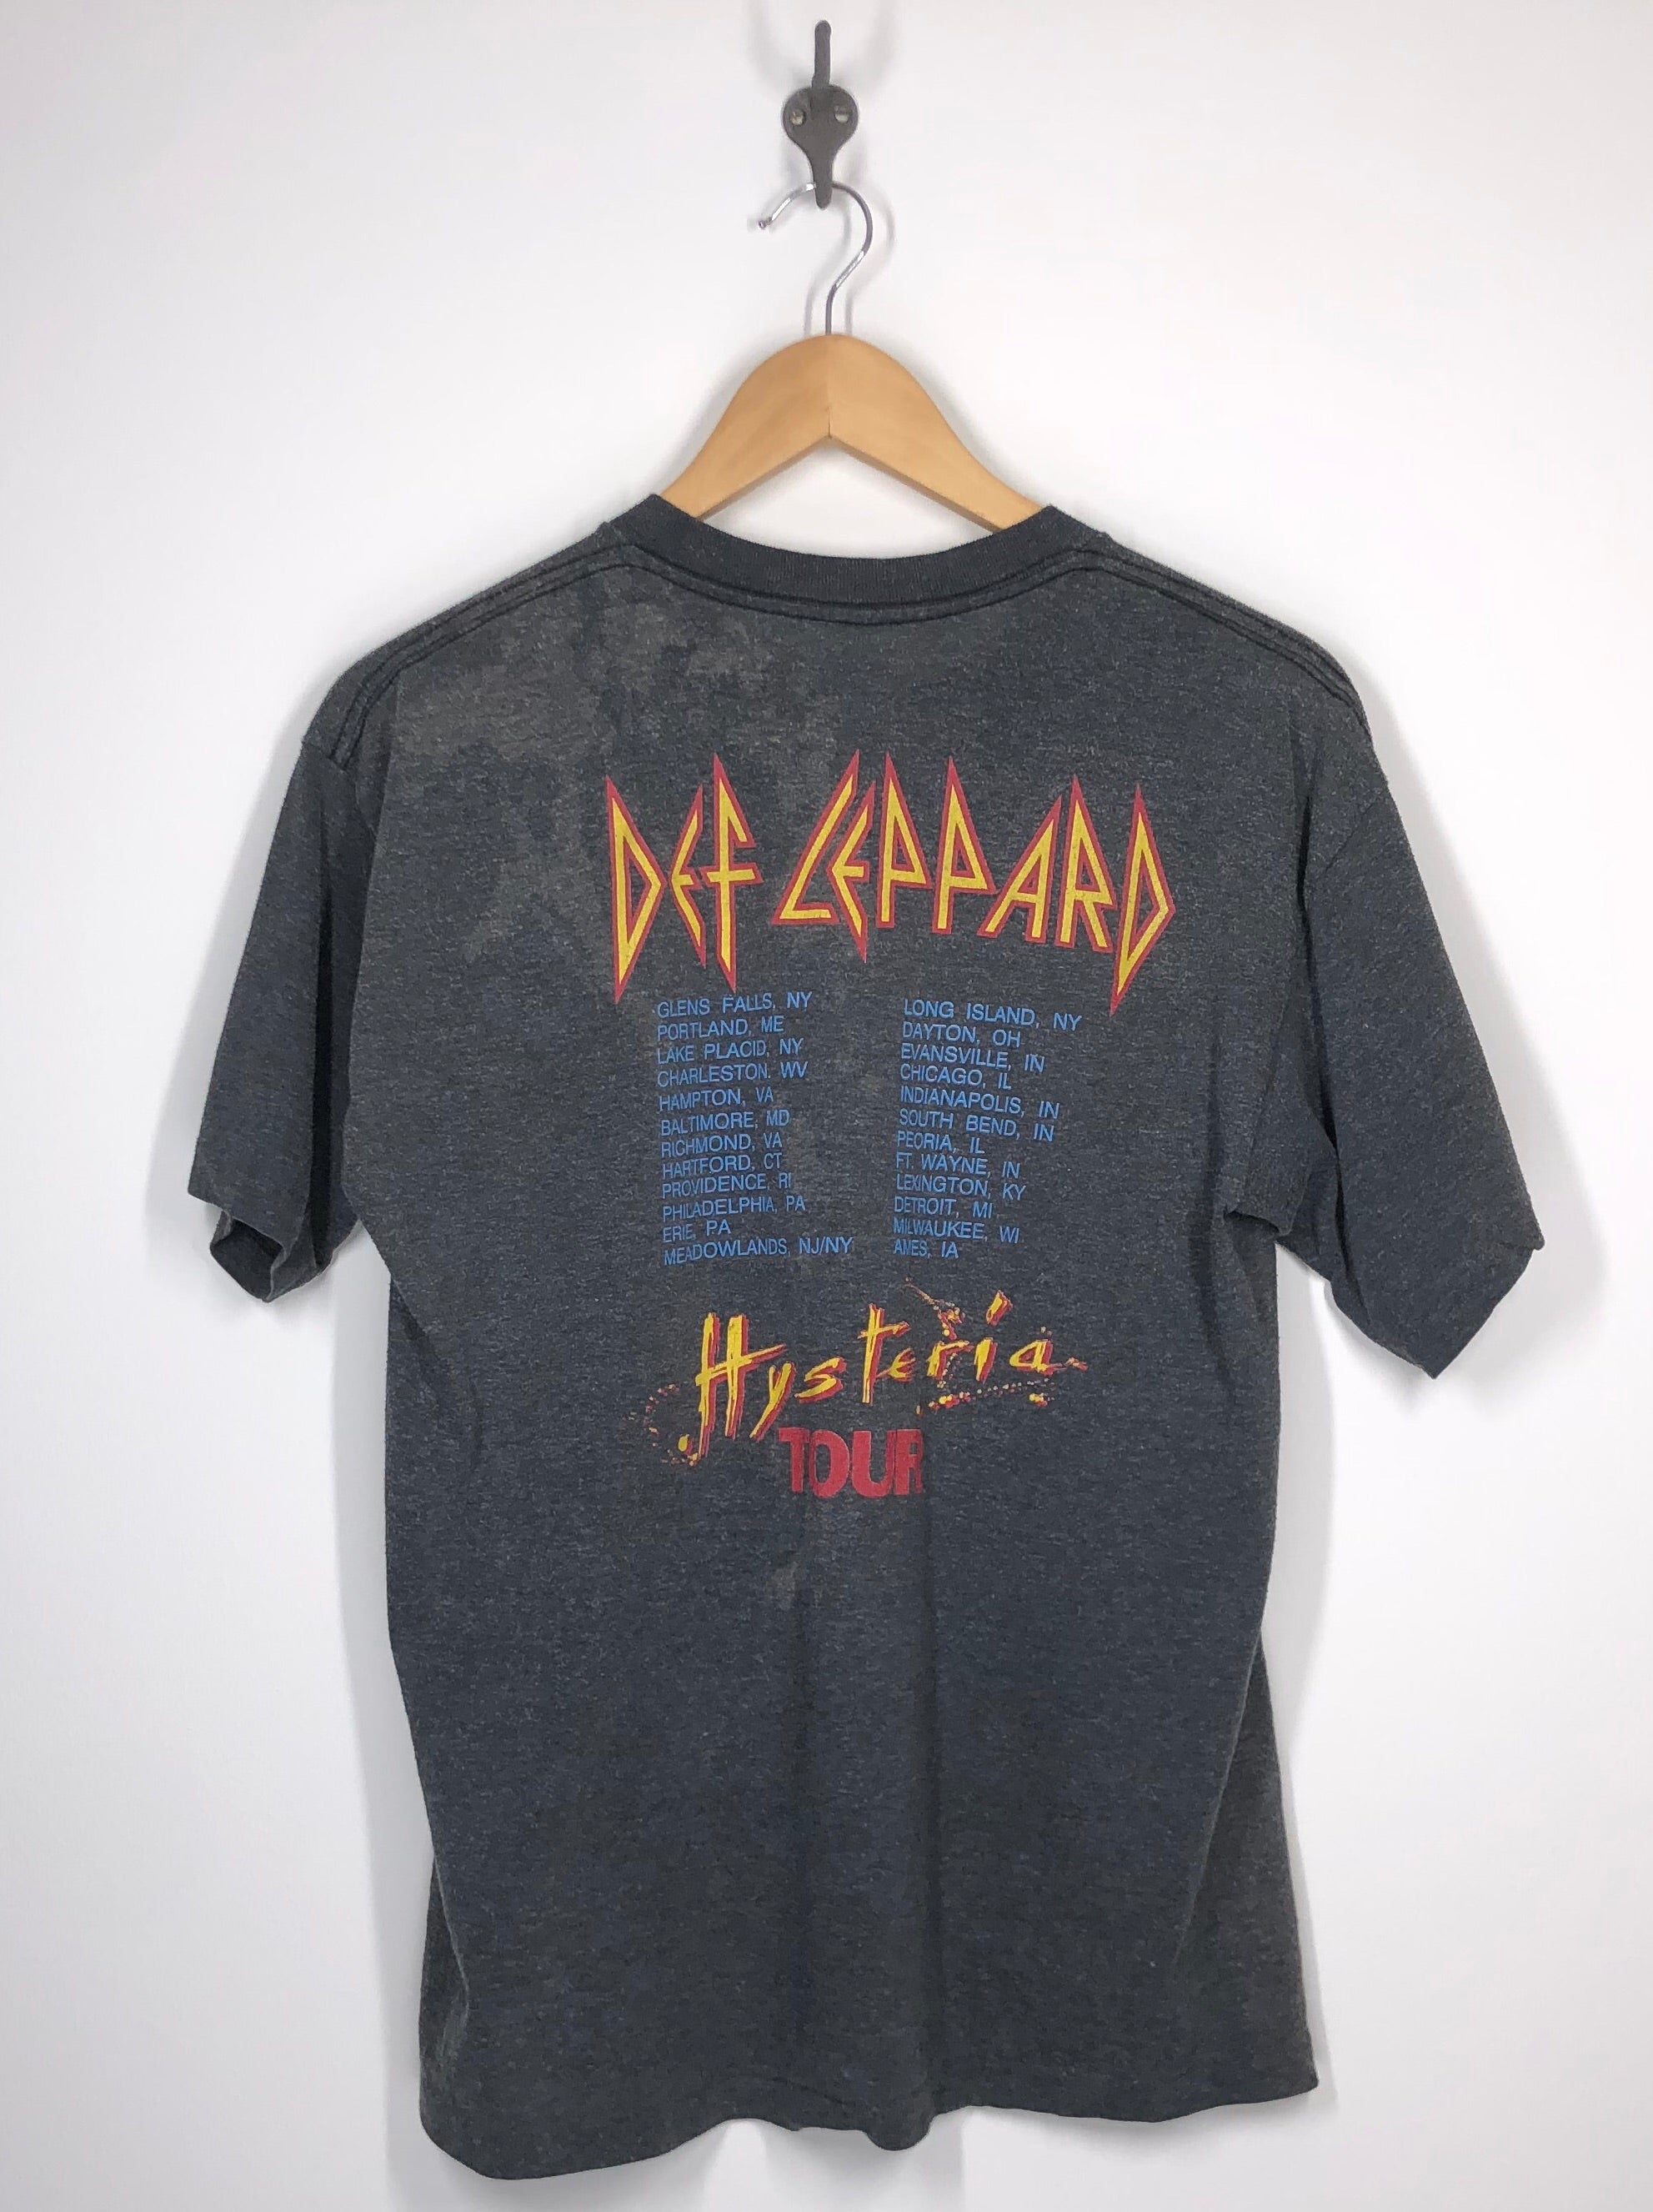 Def Leppard - 1987 Hysteria Tour T Shirt - XL